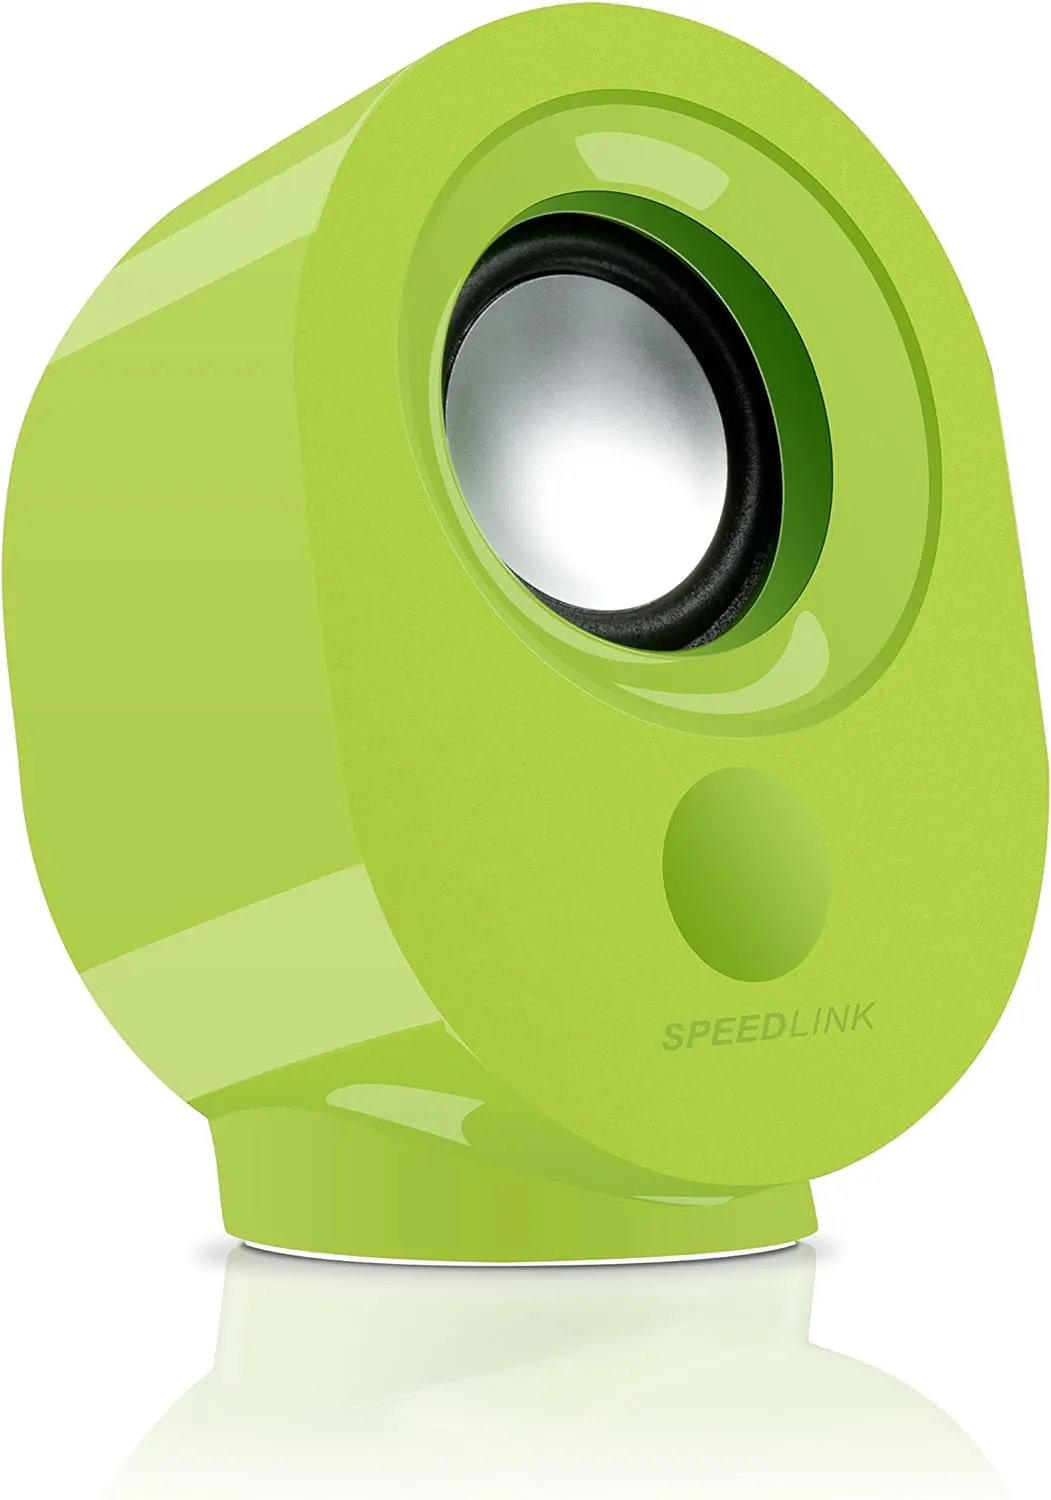 SpeedLink computer speakers, 4 Watt, 2 pieces, green, 8001GN